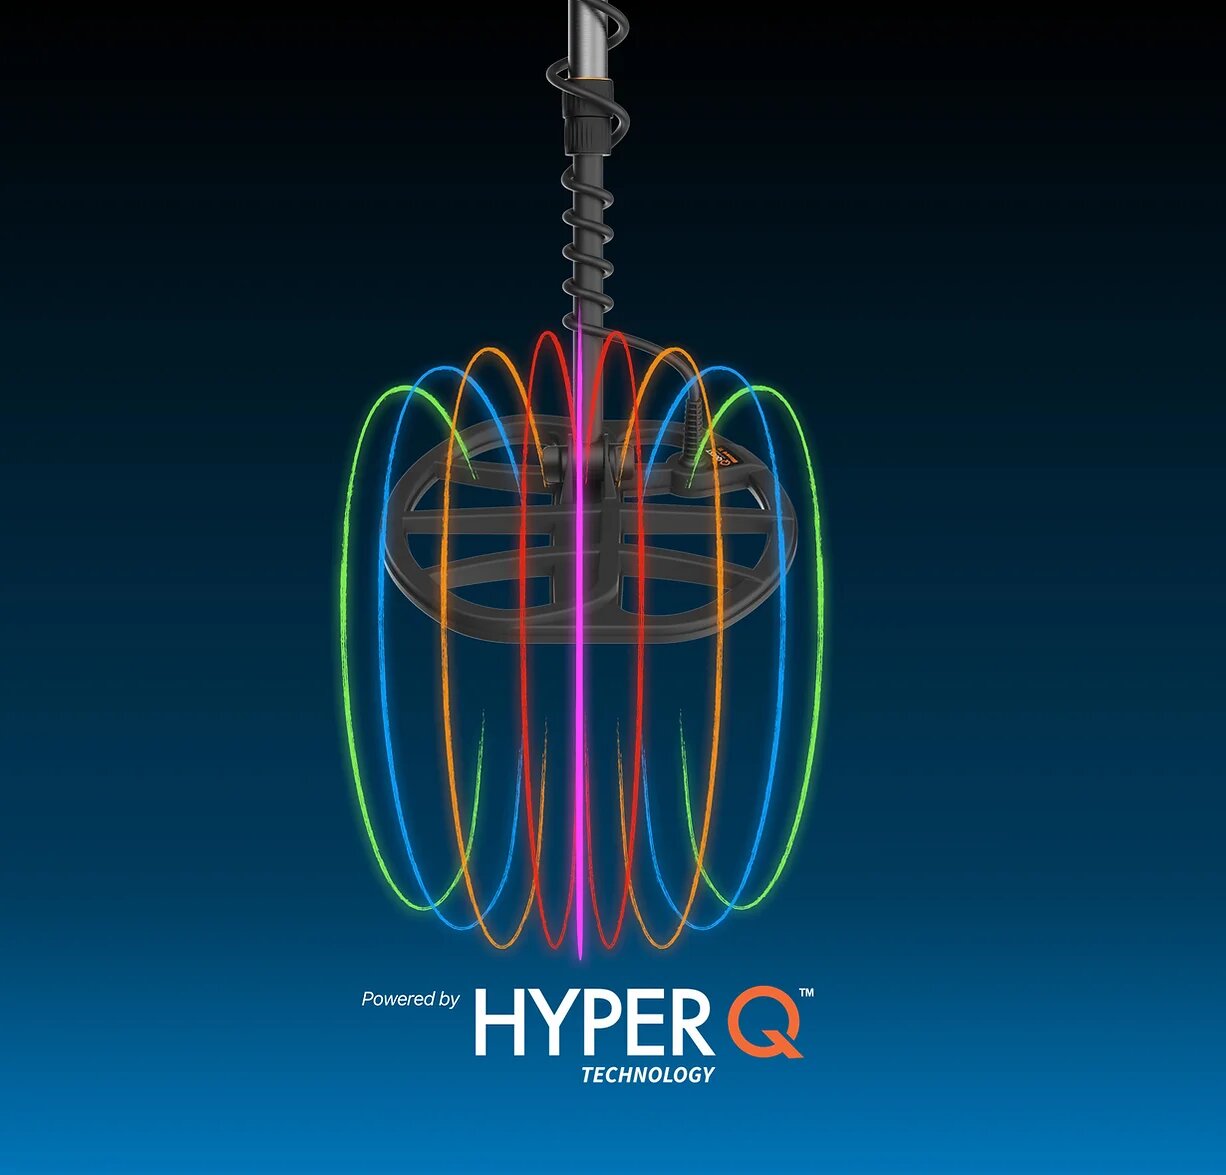 Tecnología multifrecuencia Hyper Q